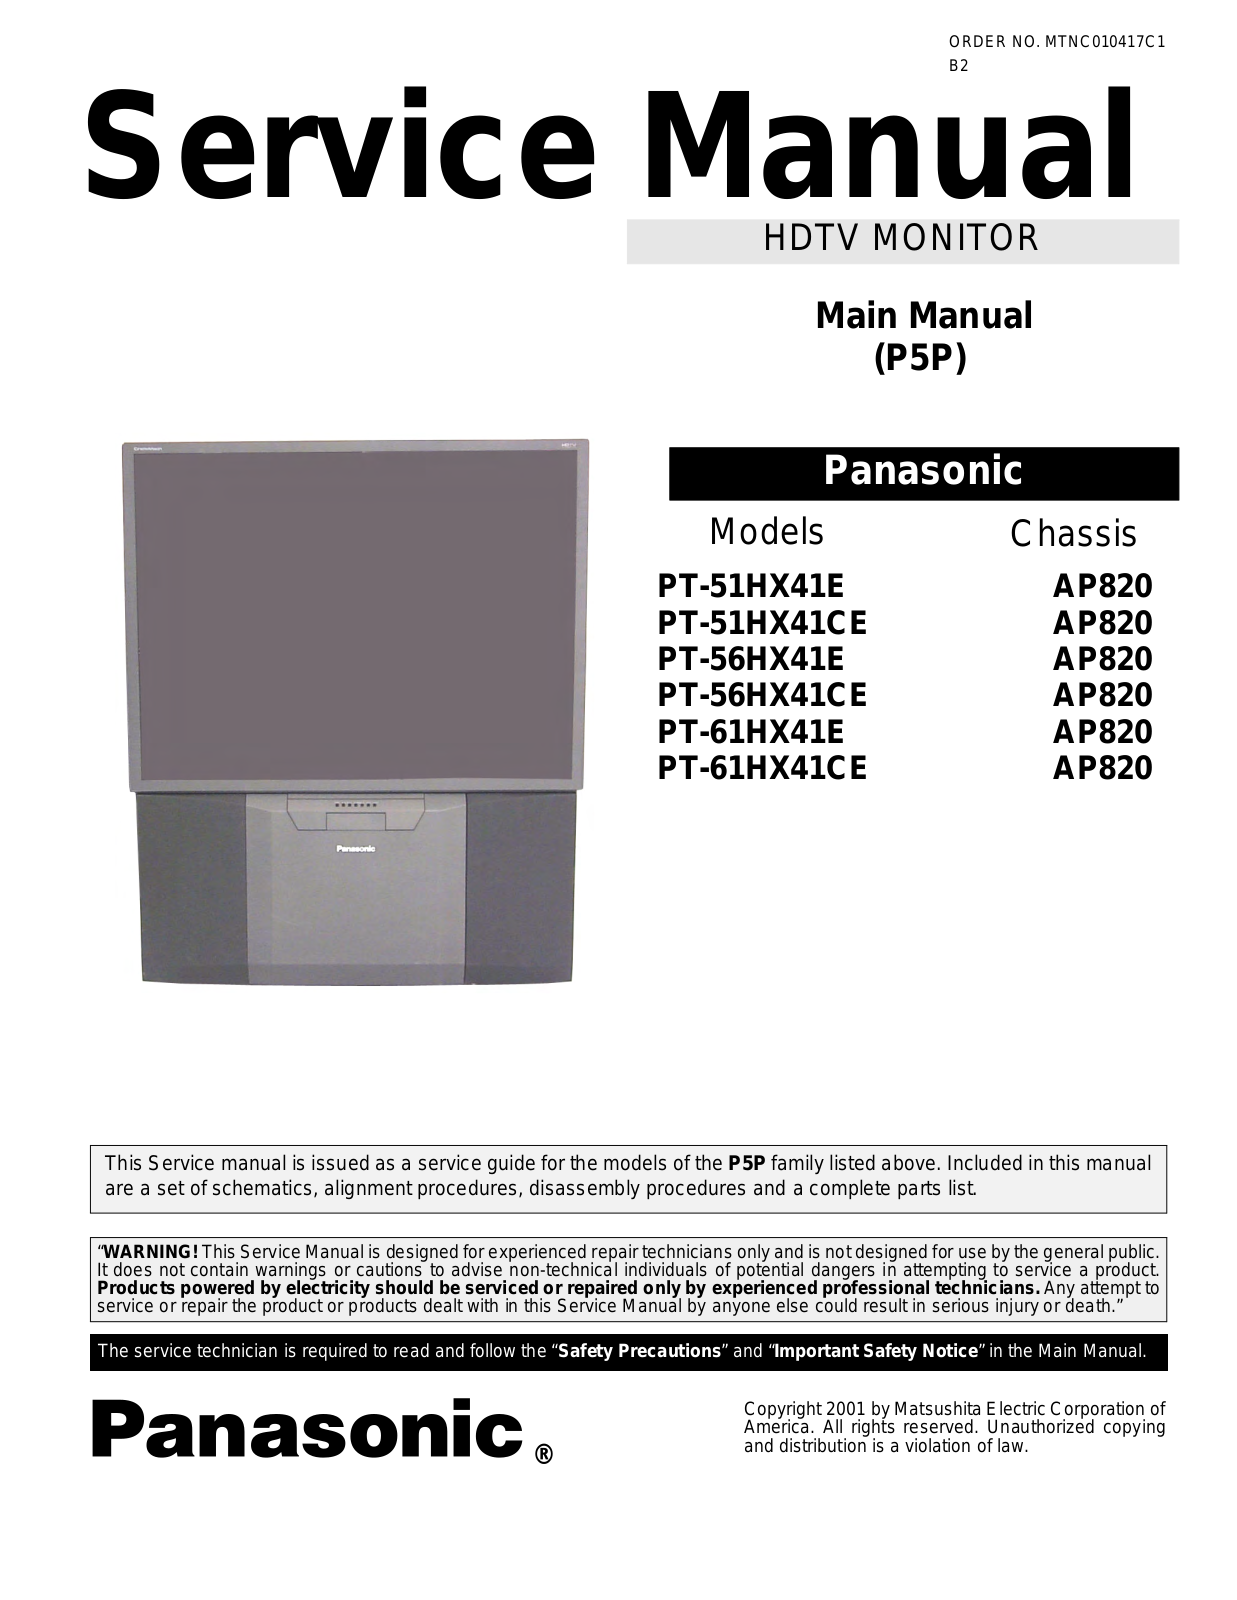 Panasonic pt51hx41e, pt51hx41ce, pt56hx41e, pt56hx41ce, pt61hx41e Diagram